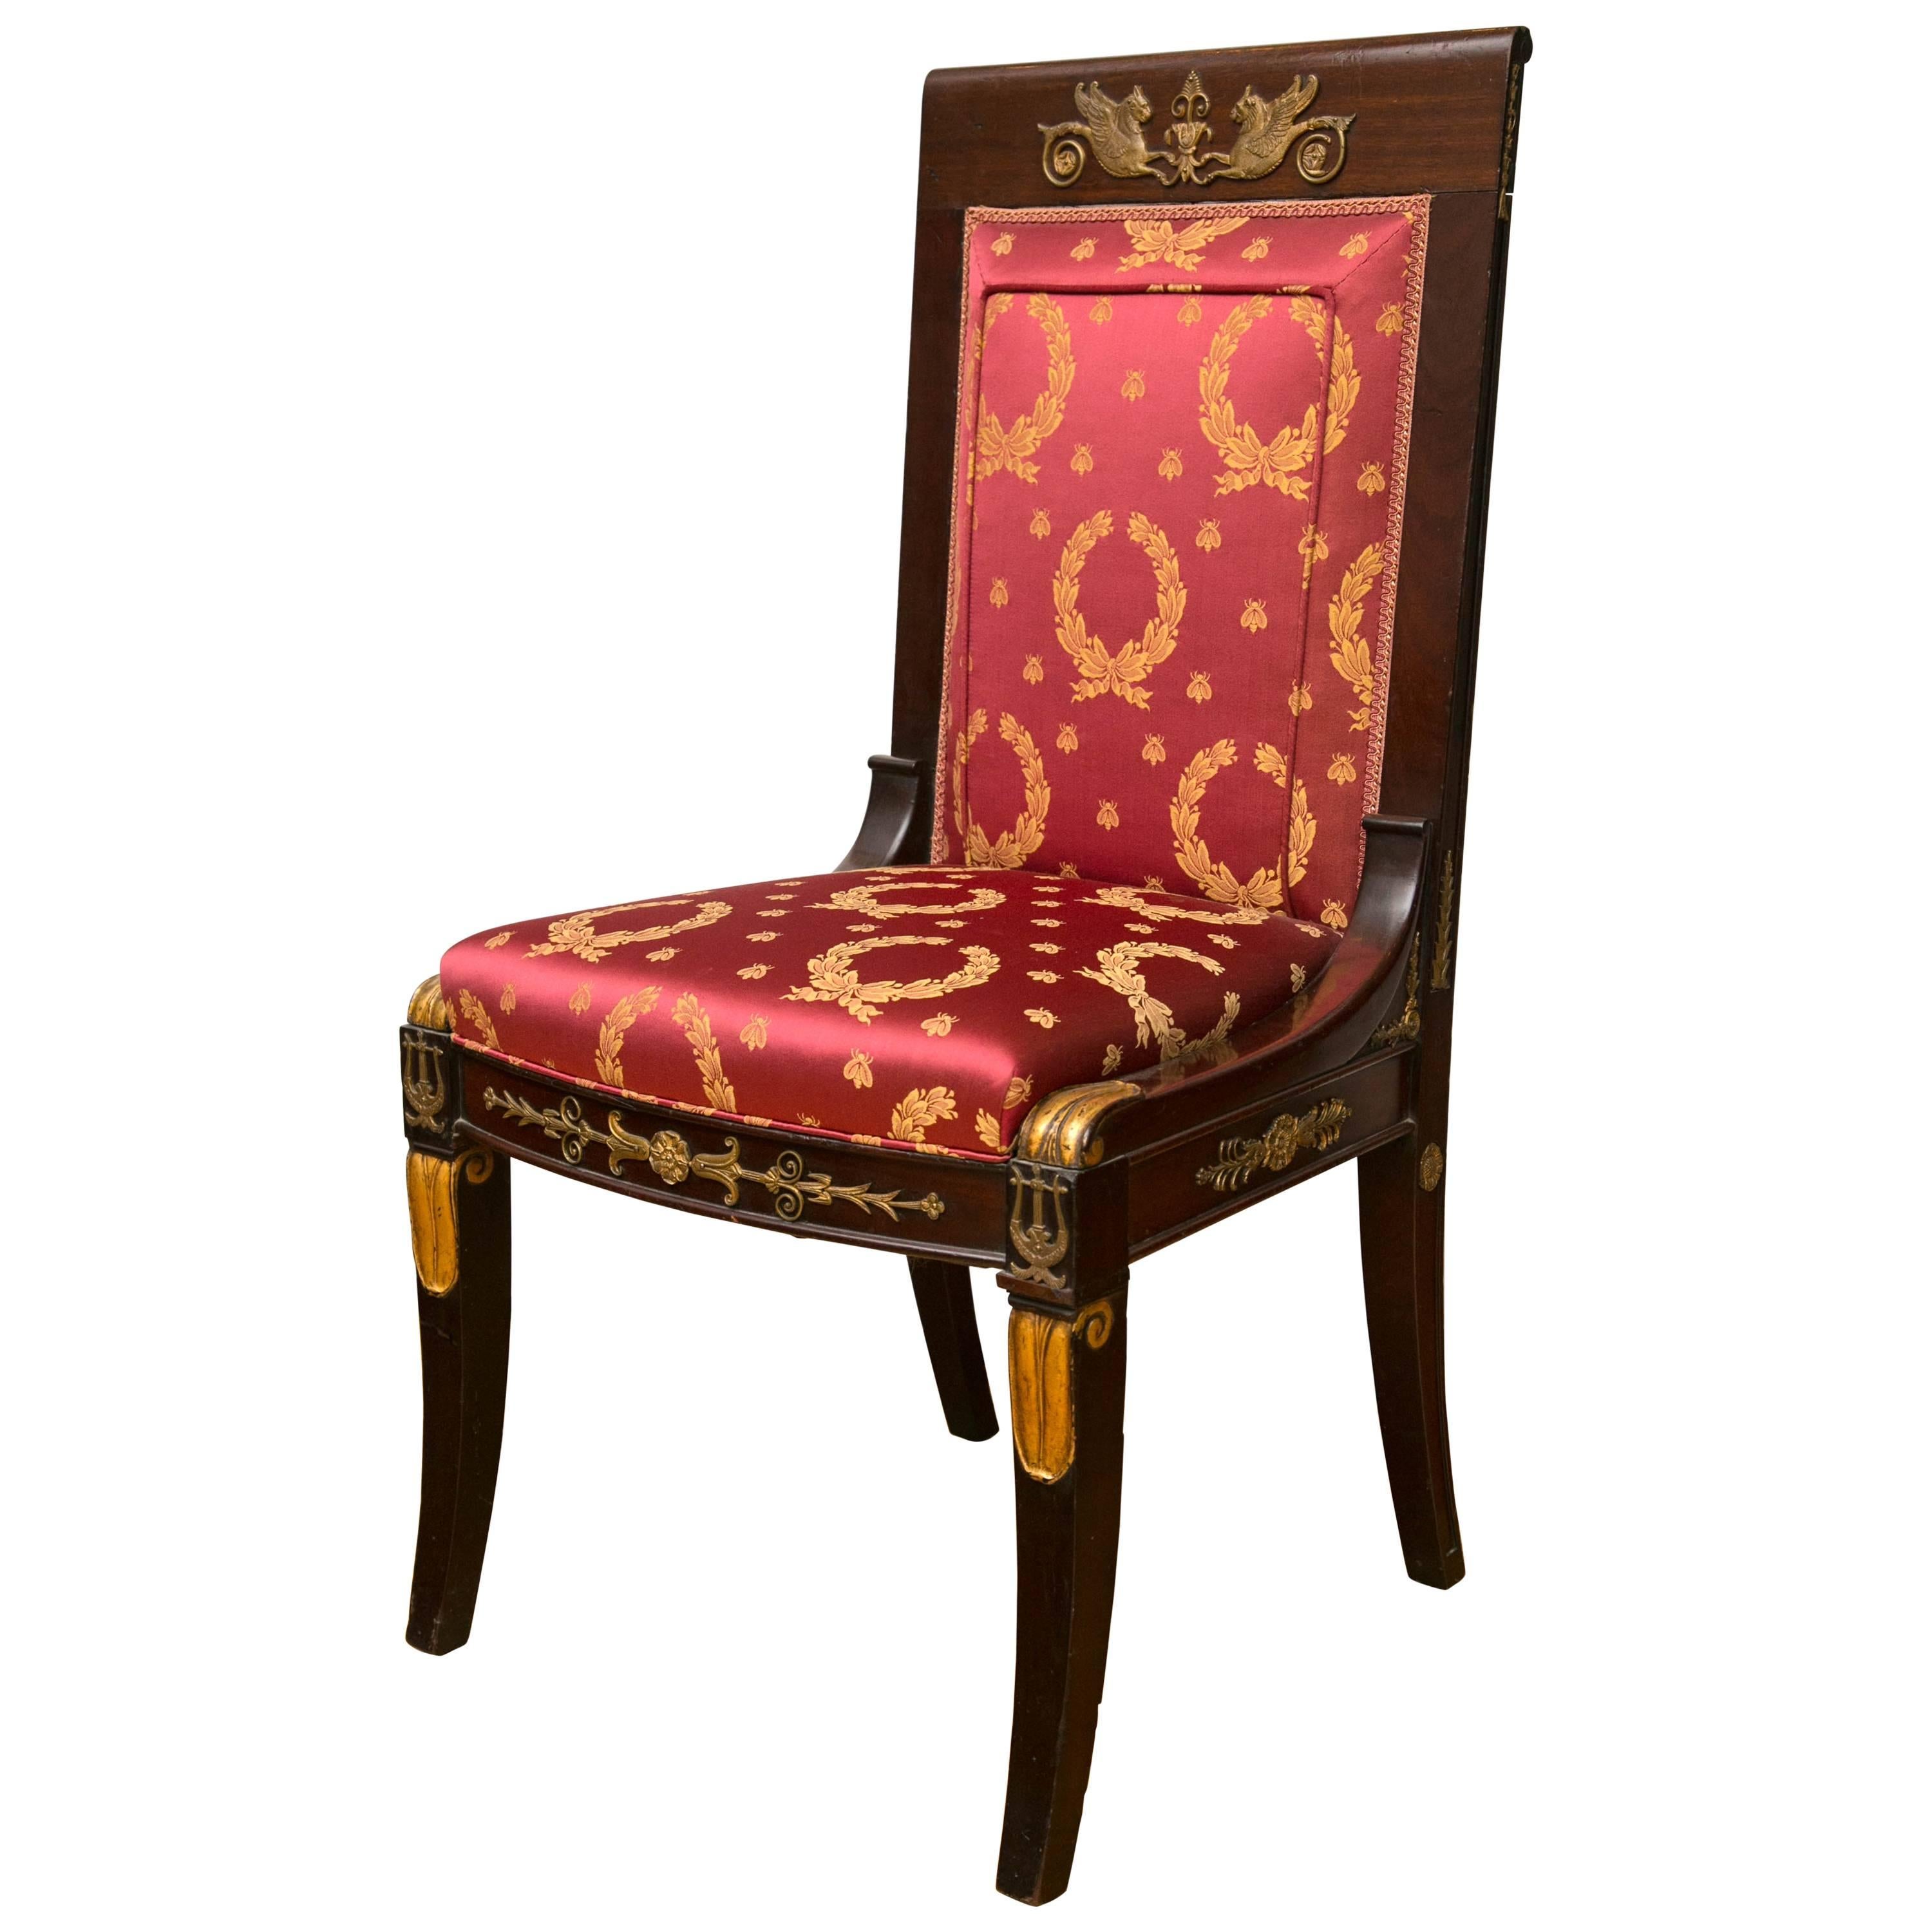 French Empire Period Mahogany Girandole Chair